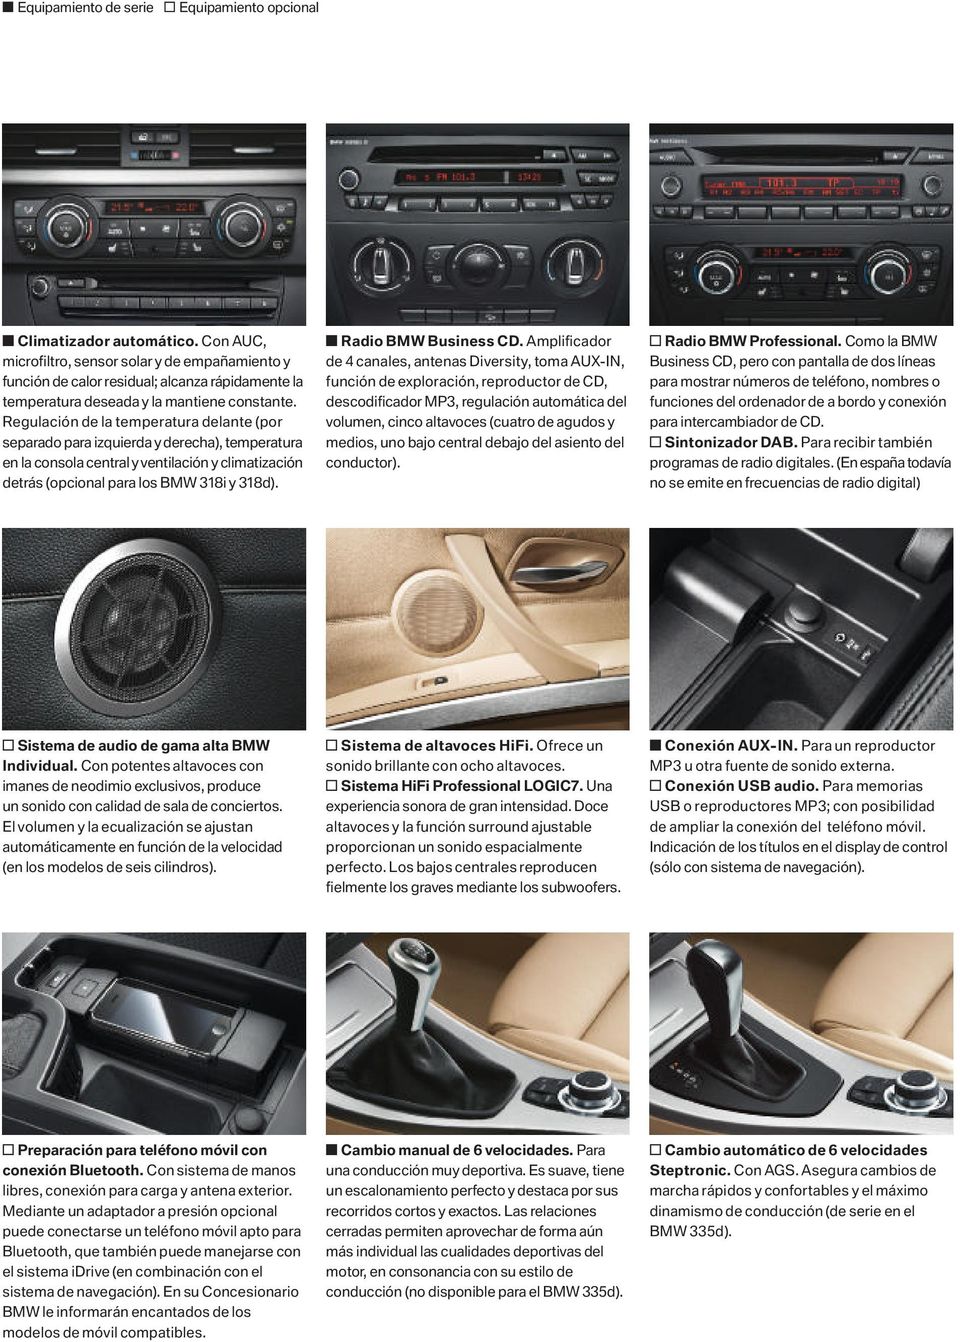 Regulación de la temperatura delante (por separado para izquierda y derecha), temperatura en la consola central y ventilación y climatización detrás (opcional para los BMW y ). Radio BMW Business CD.